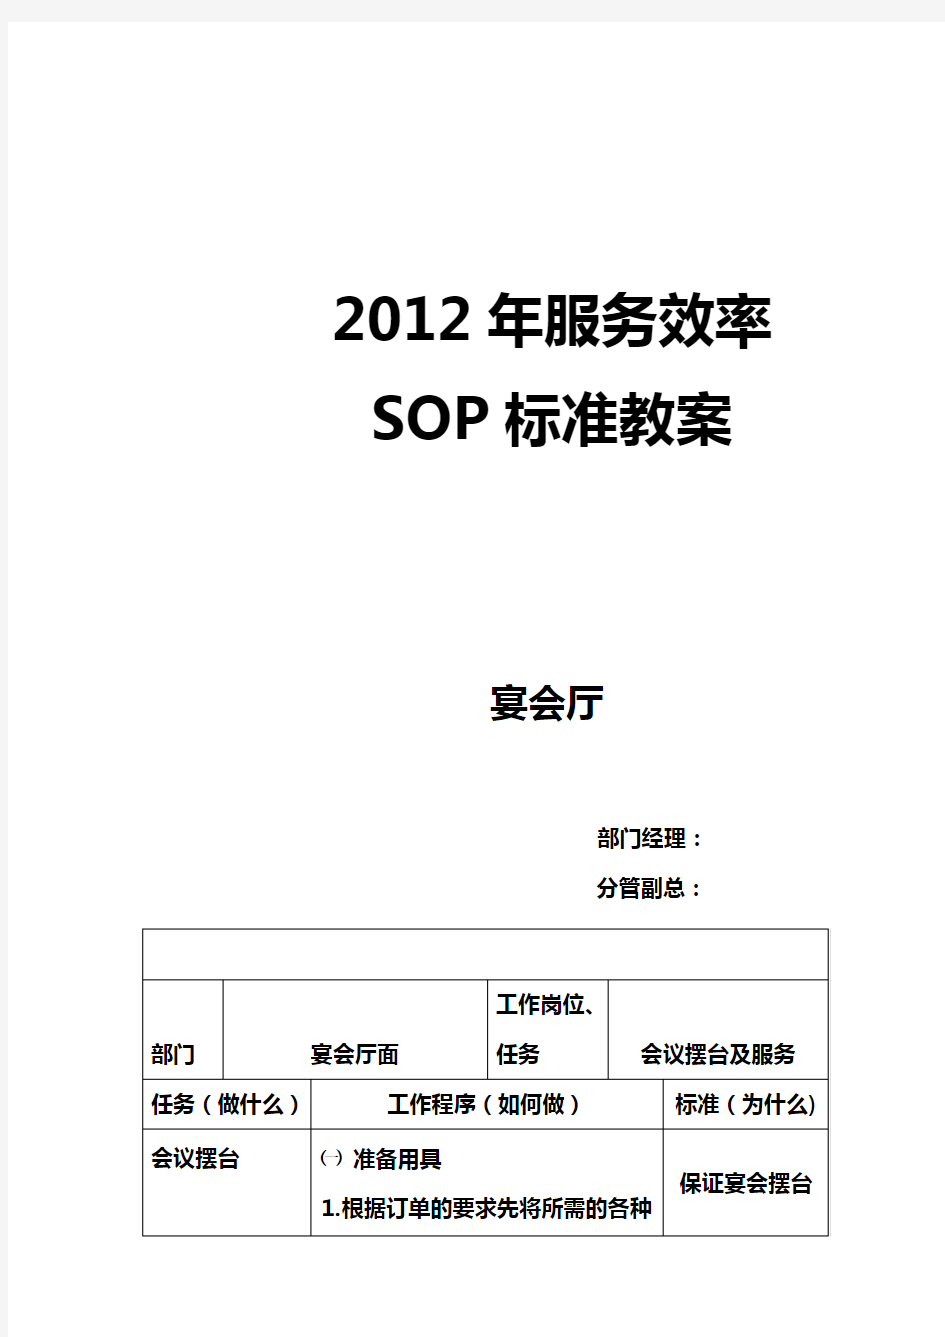 会议标准化操作程序SOP